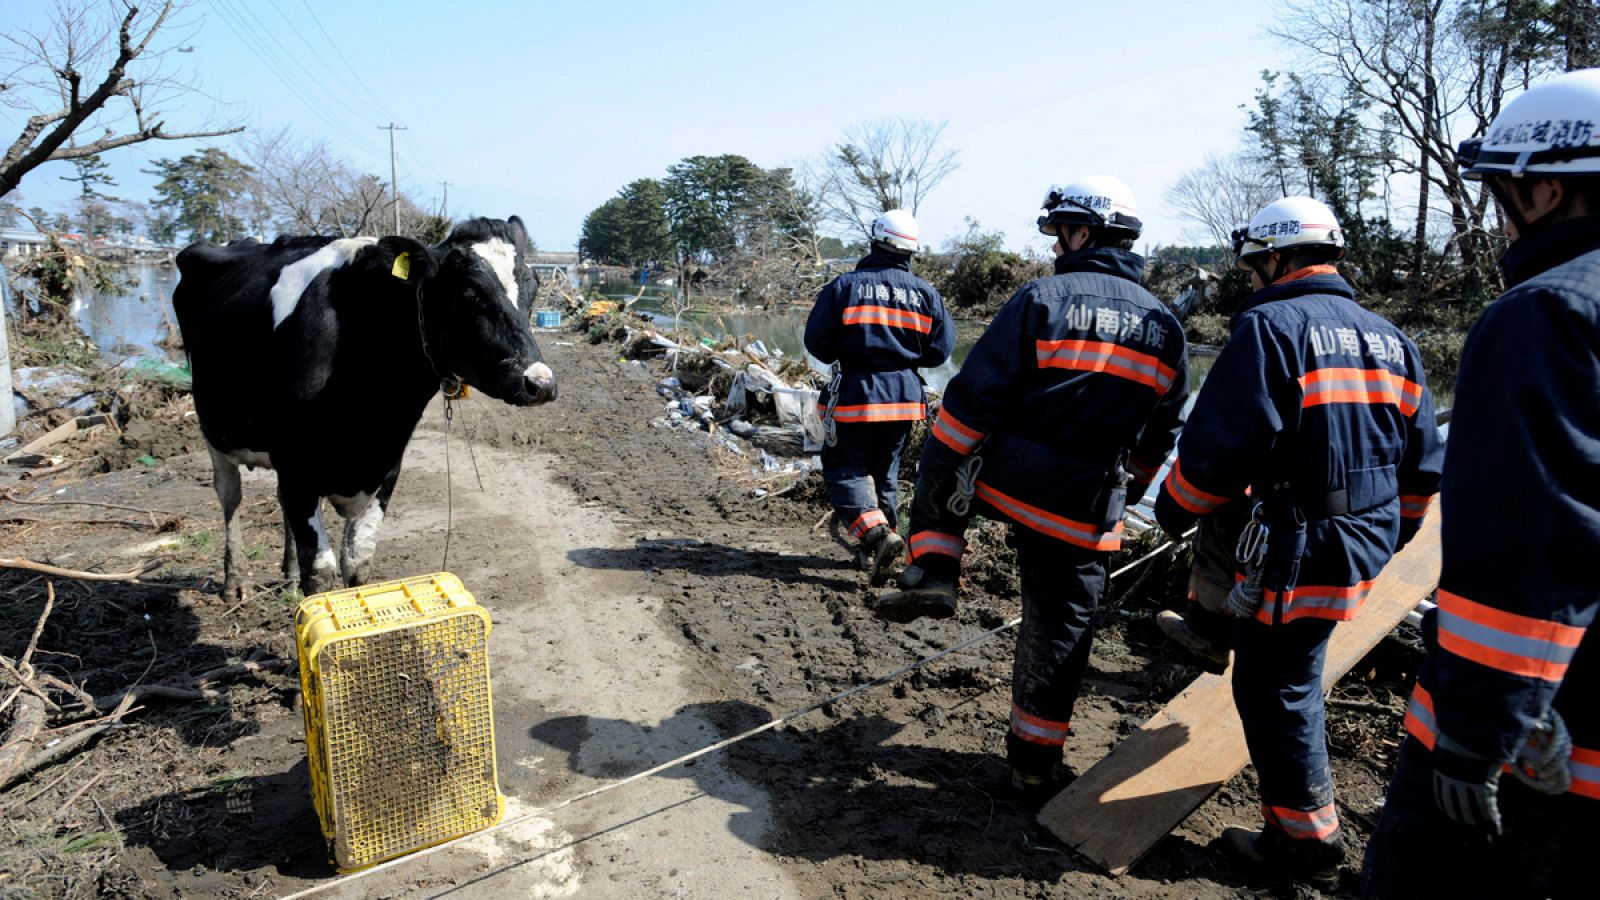 Los bomberos observan una vaca que sobrevivió el tsunami en la localidad de Sendai, Japón, en marzo de 2011.